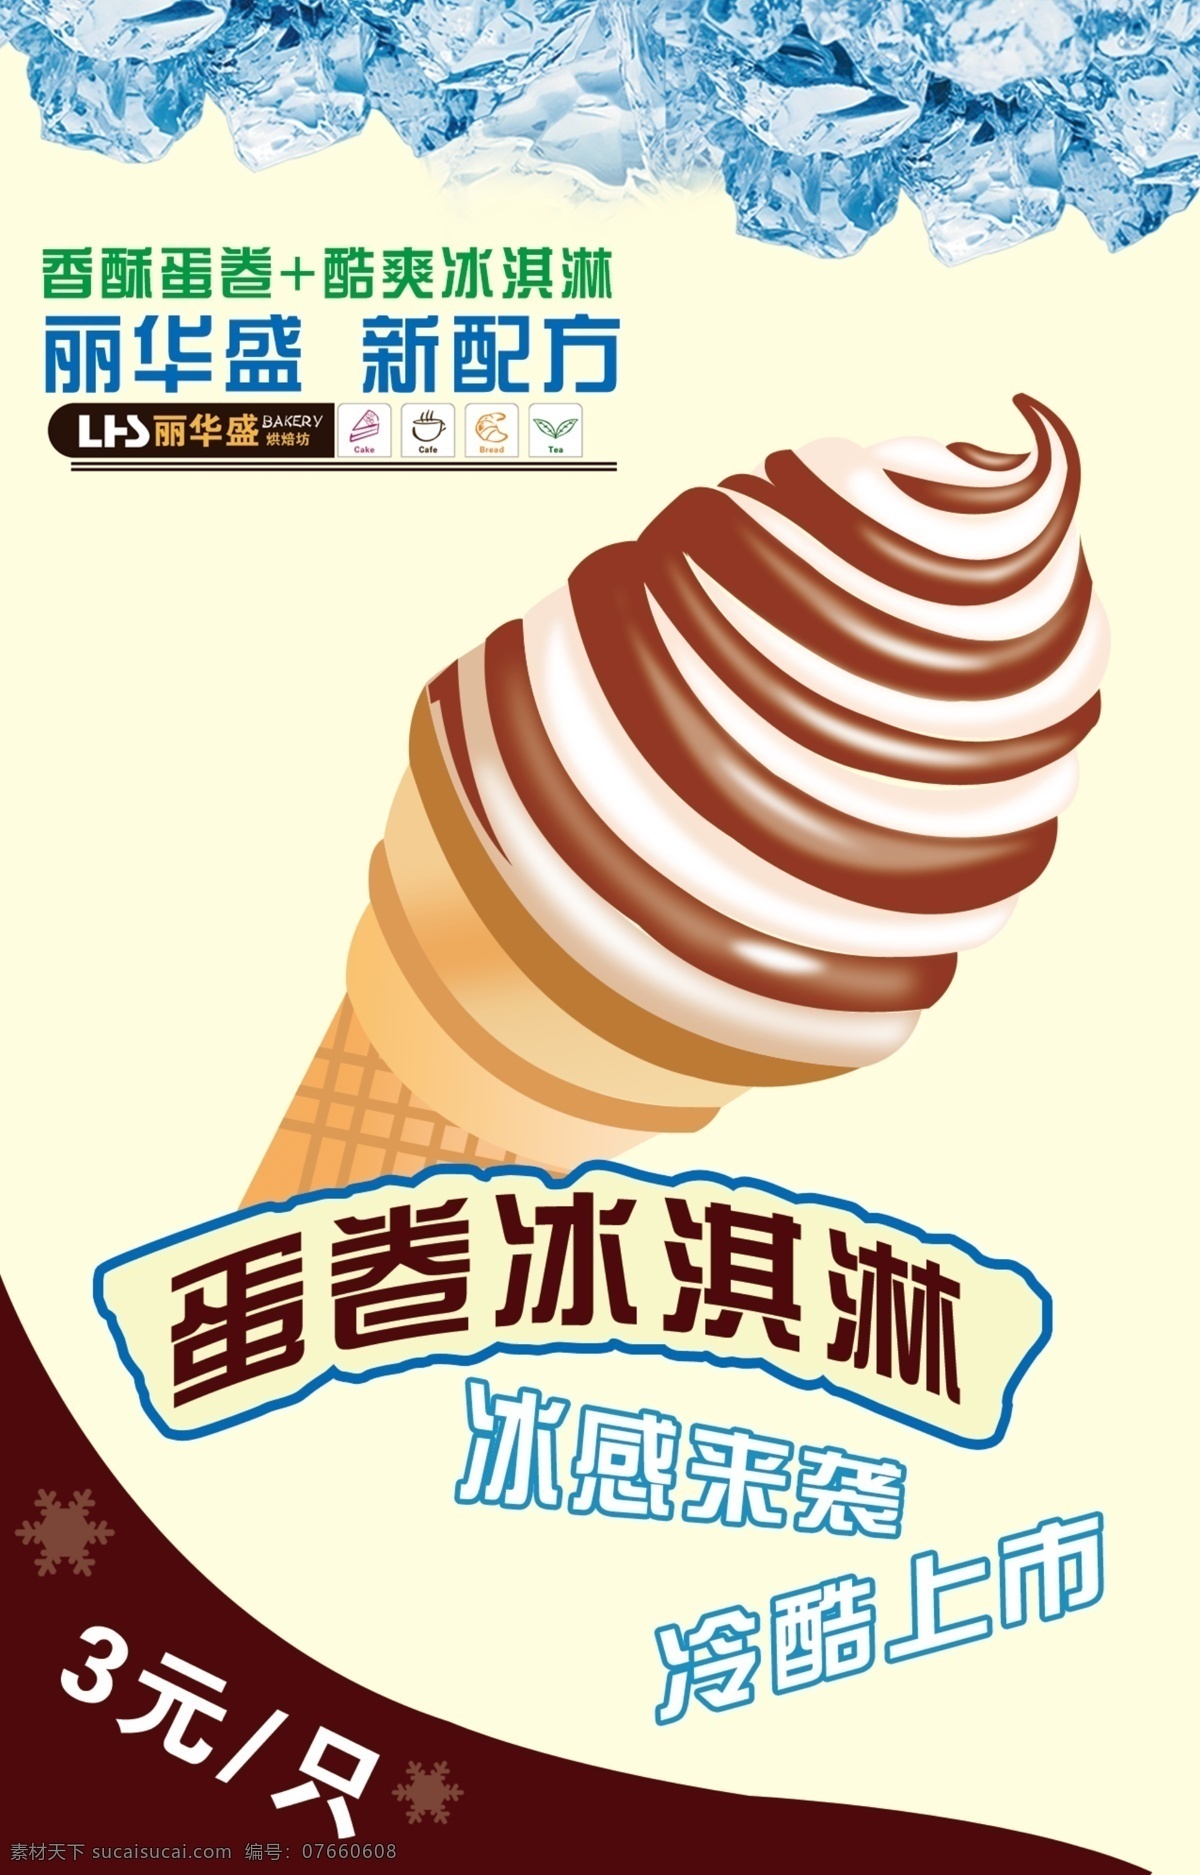 冰淇淋海报 冰淇淋广告 冰淇淋宣传 蛋卷冰淇淋 冰块 白色